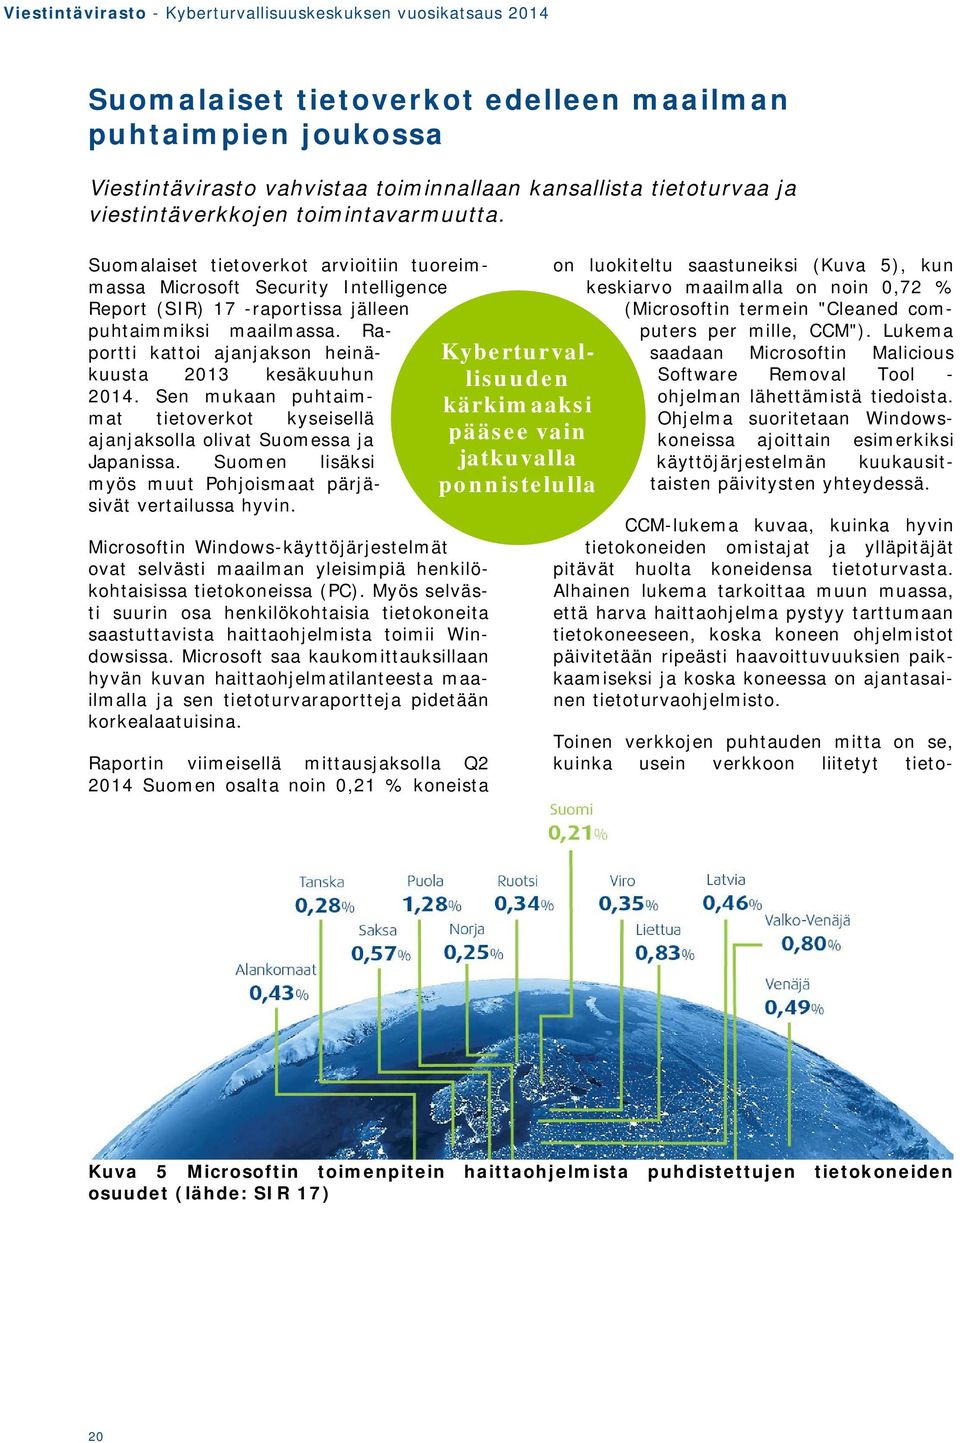 Raportti kattoi ajanjakson heinäkuusta 2013 kesäkuuhun 2014. Sen mukaan puhtaimmat tietoverkot kyseisellä ajanjaksolla olivat Suomessa ja Japanissa.